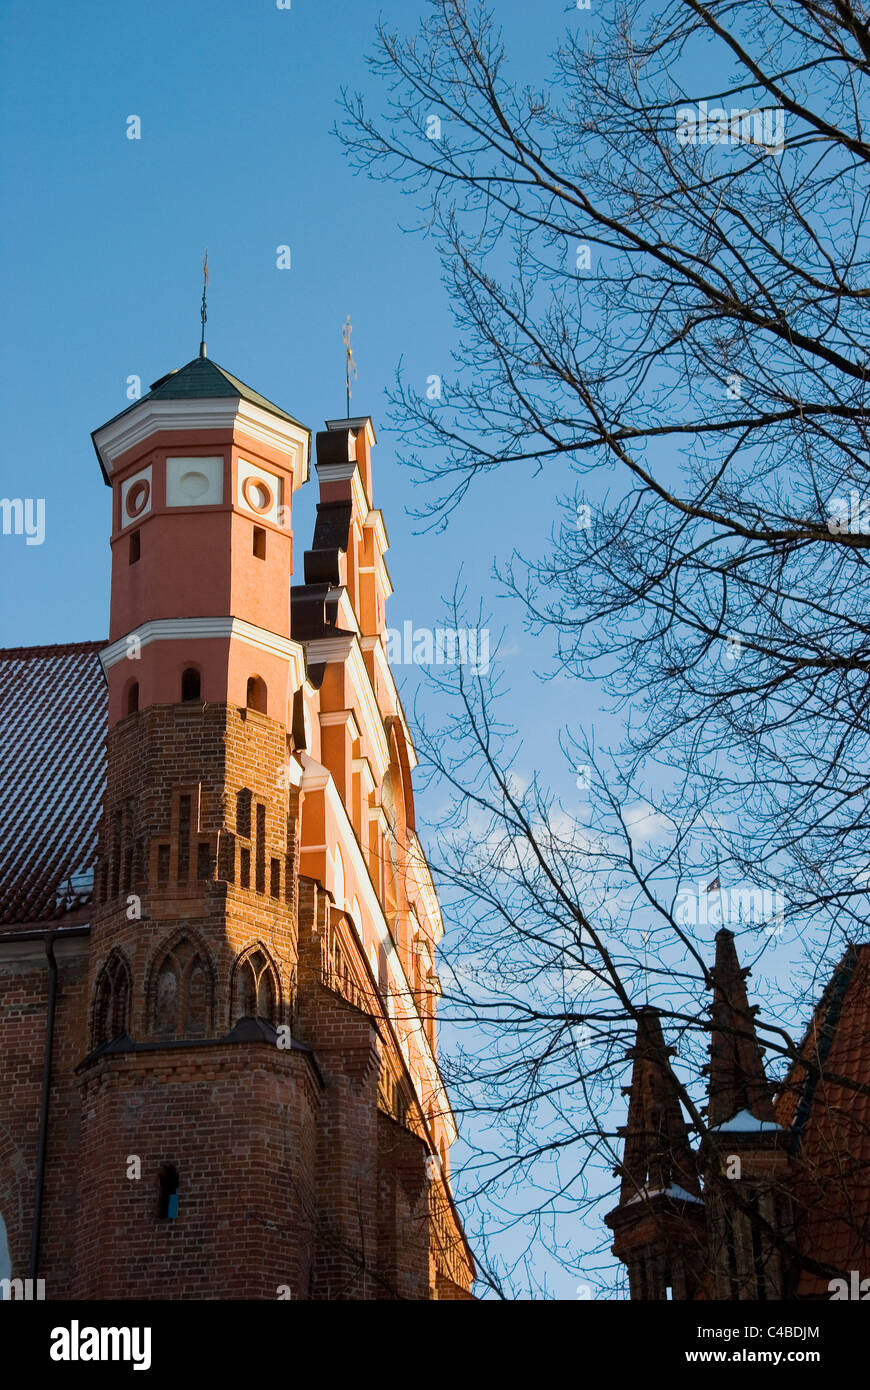 Belle vue de l'architecture. Tours de l'église des Bernardins de Vilnius en Lituanie. Banque D'Images